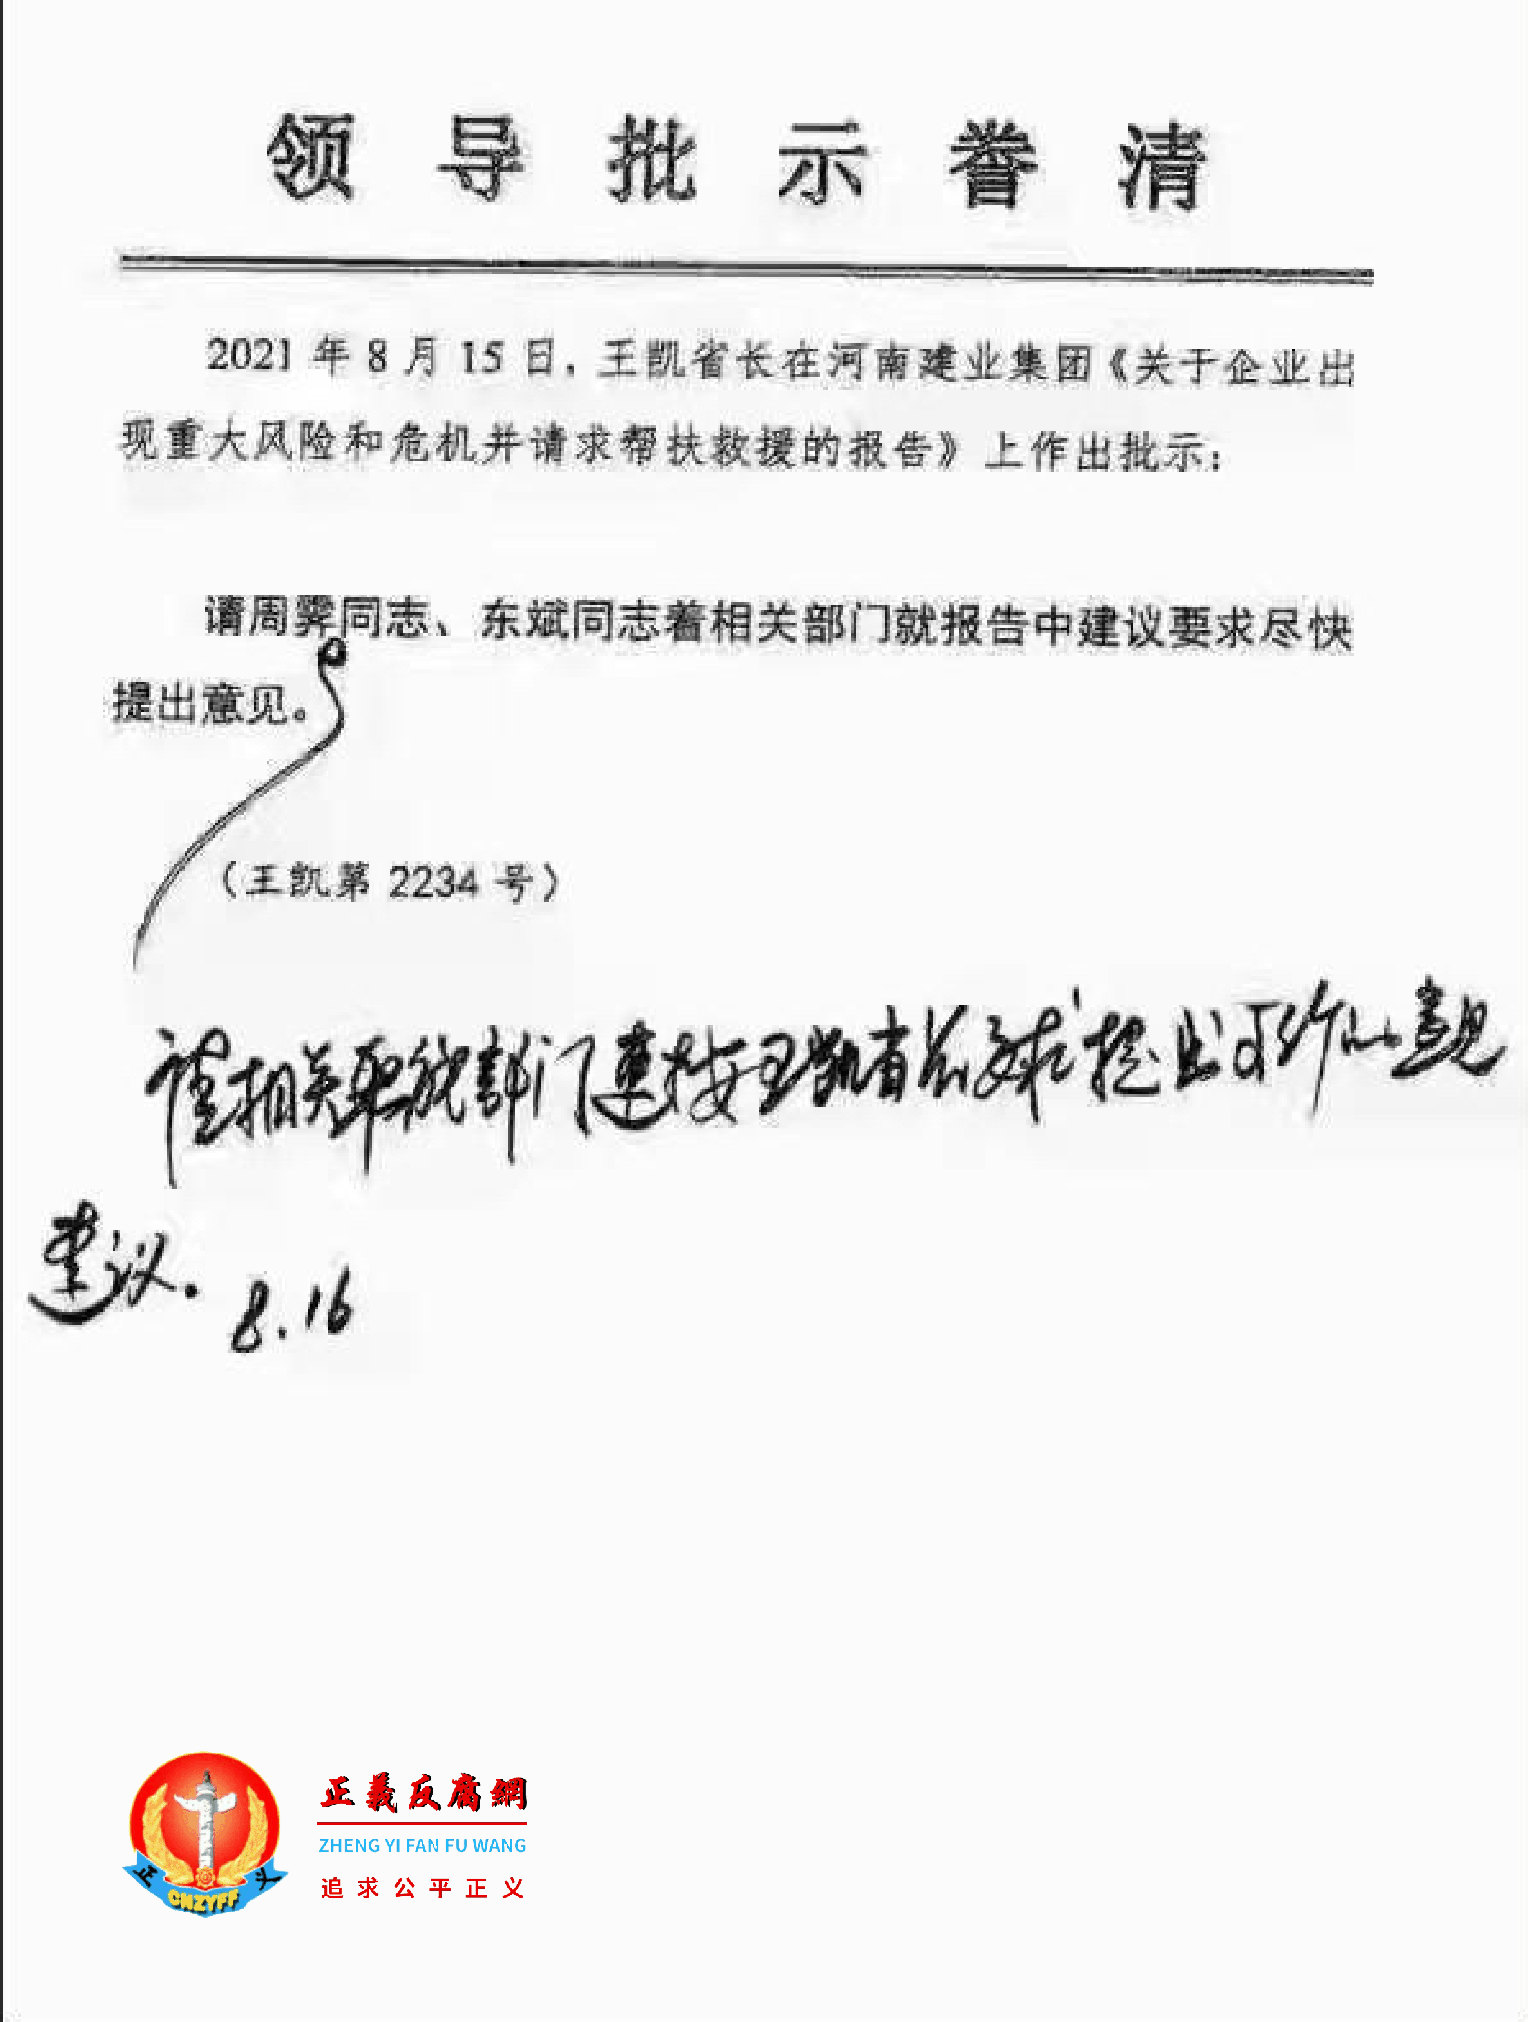 王凯省长在河南建业地产集团求救信《关于企业出现重大风险和危机并请求帮扶救援的报告》上作出批示。.png